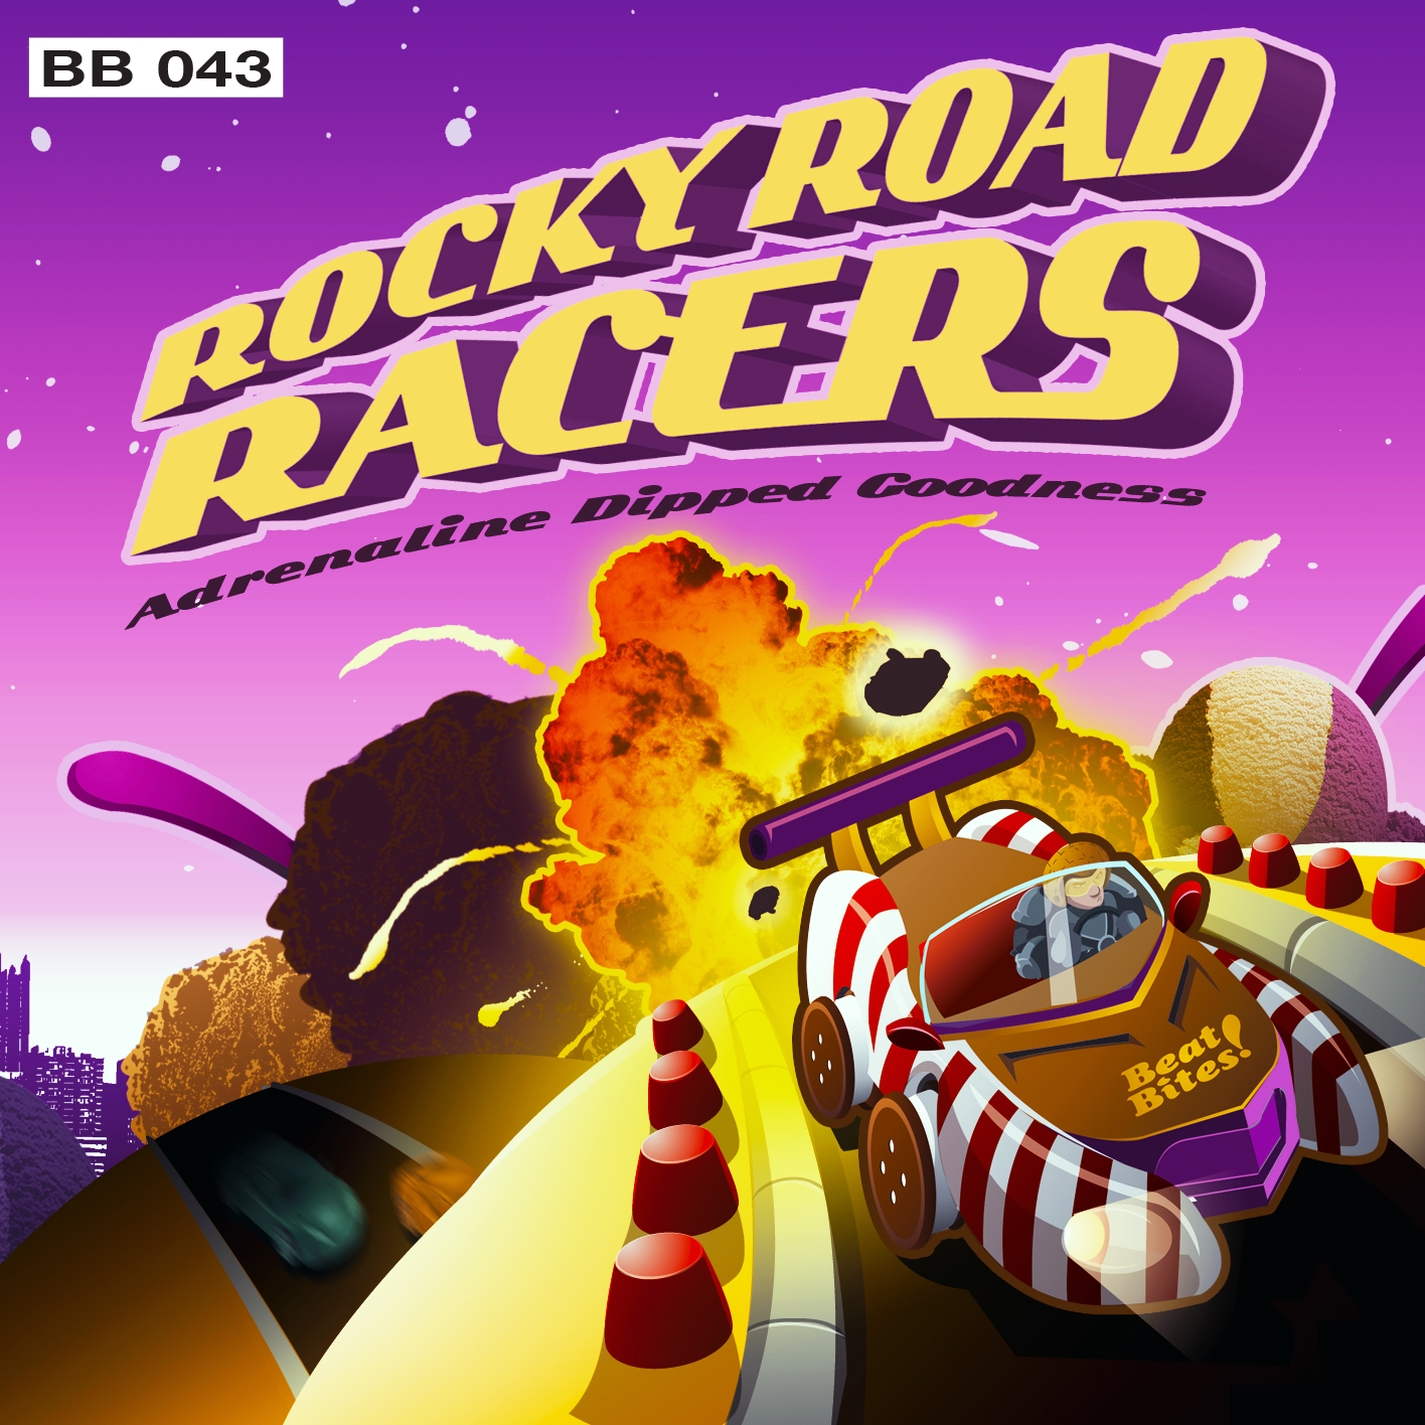 Megatrax - Rocky Road Racers